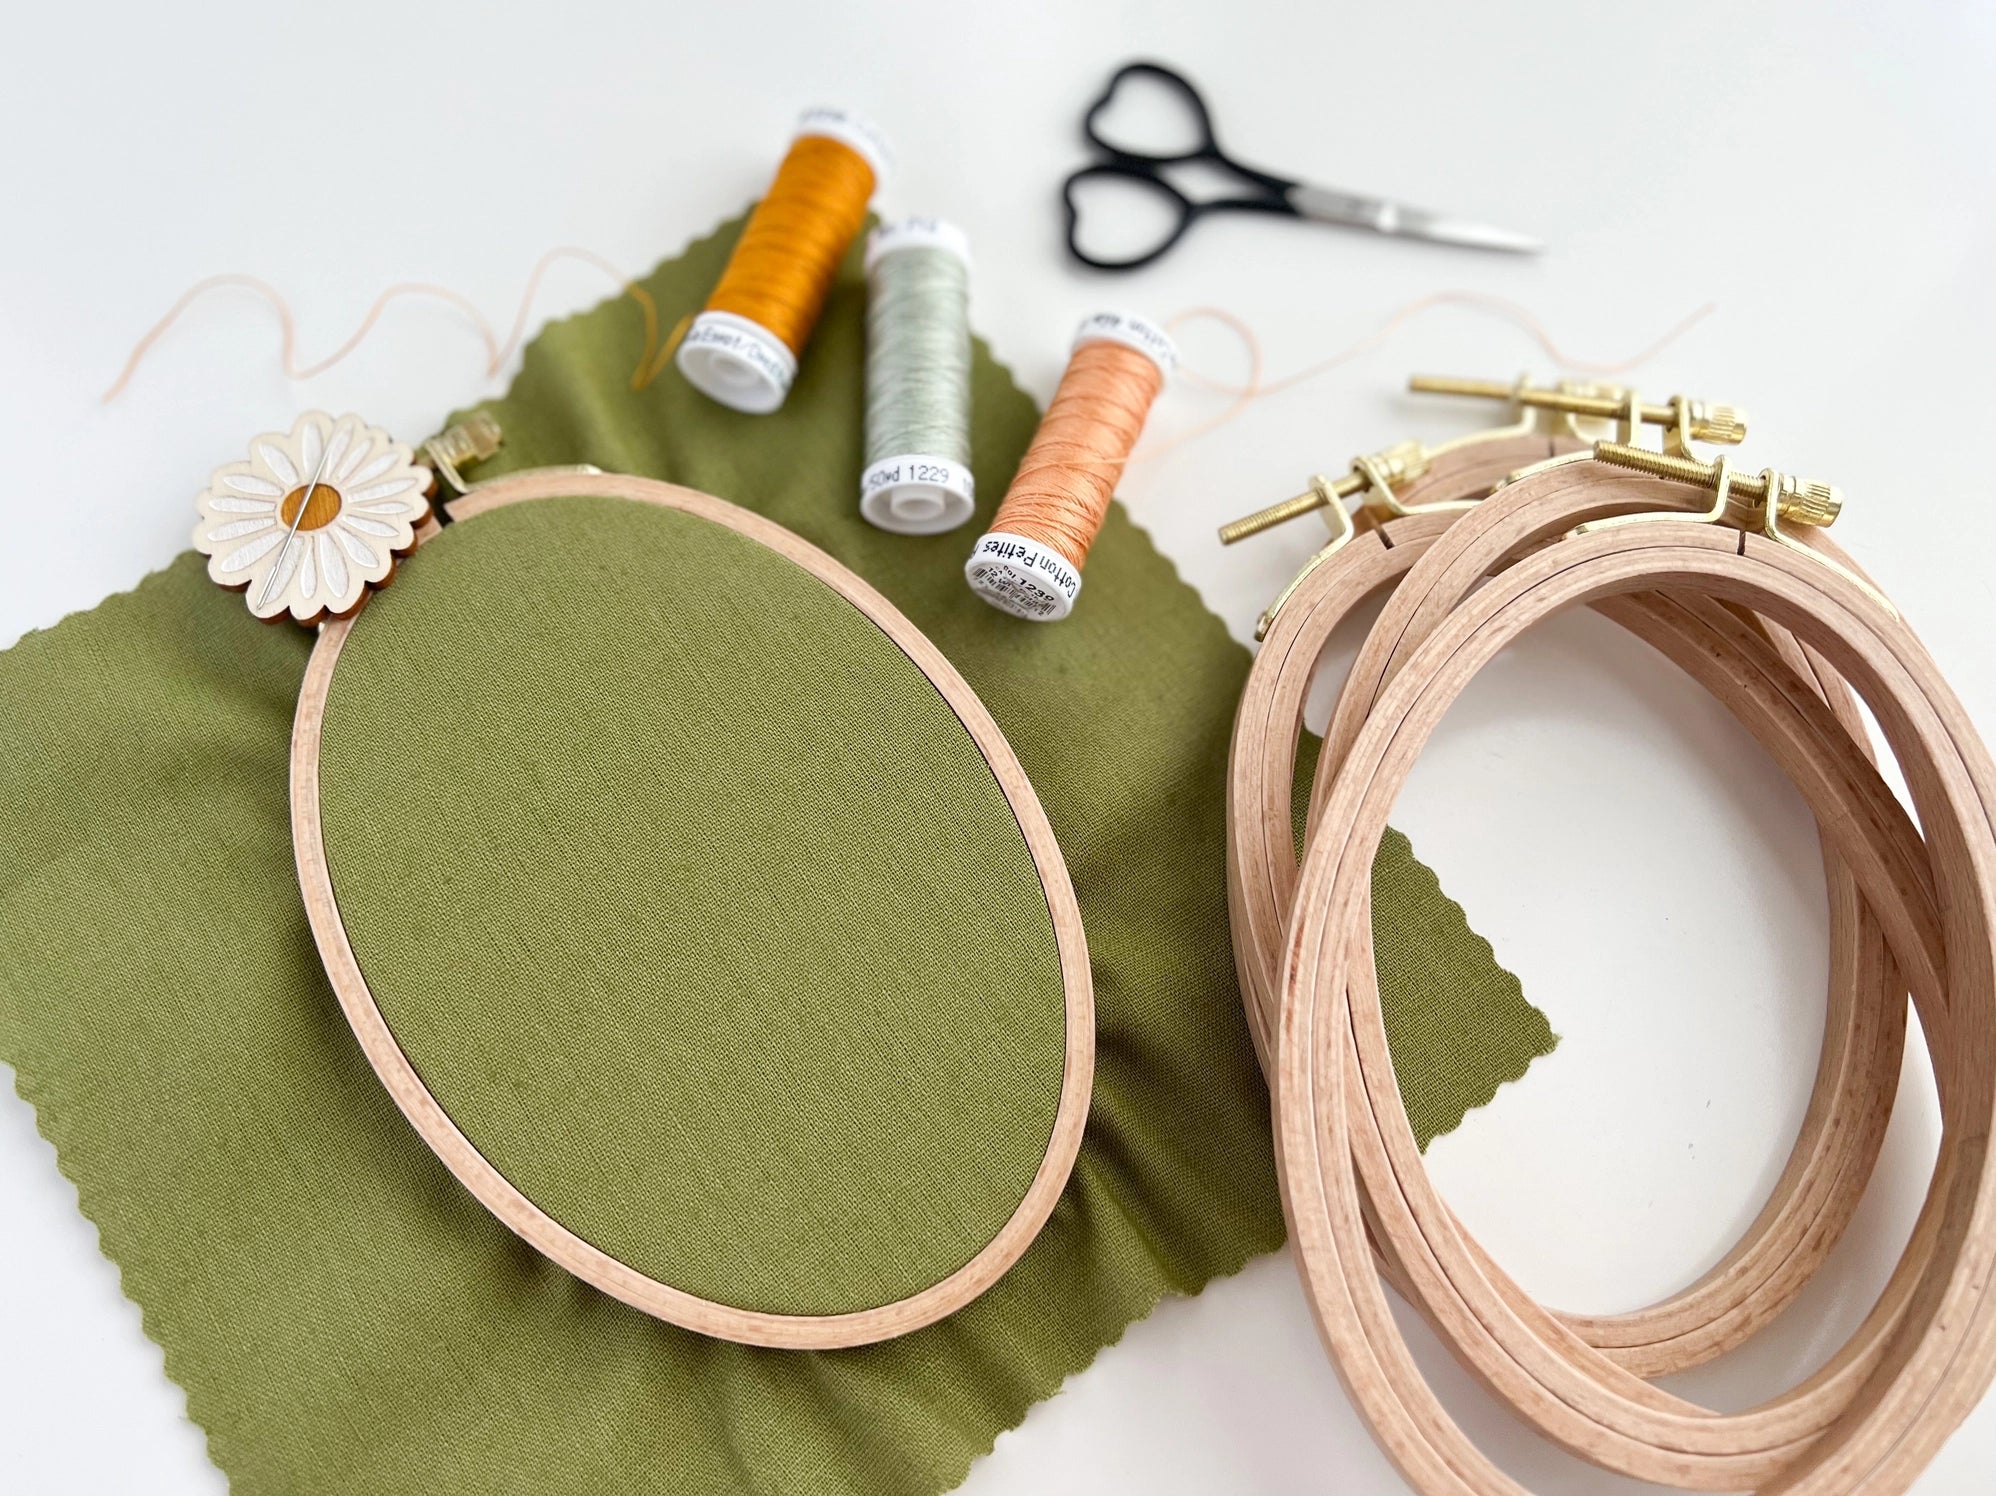 Beechwood Small Oval Embroidery Hoop 4"x6" - Matryoshka Doll Shop